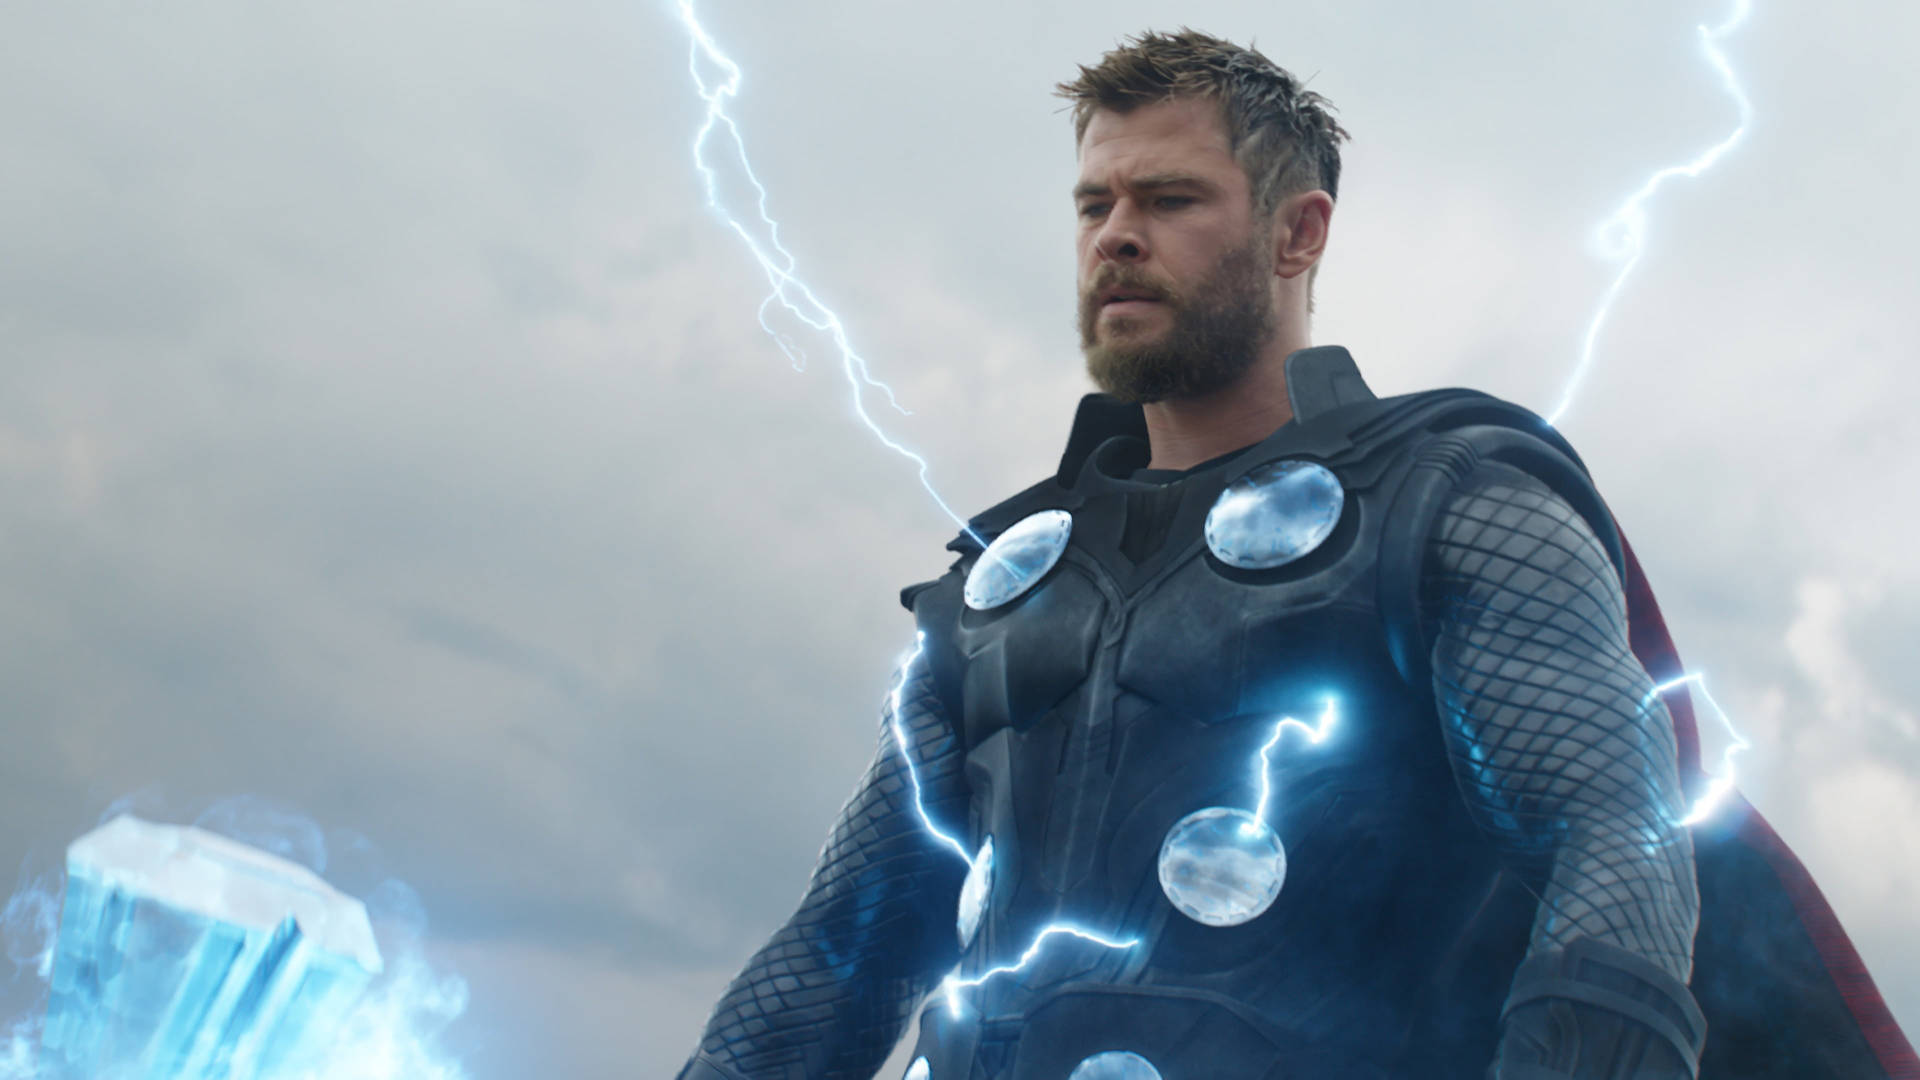 Thunder God In 4k - Thor From Avengers Endgame